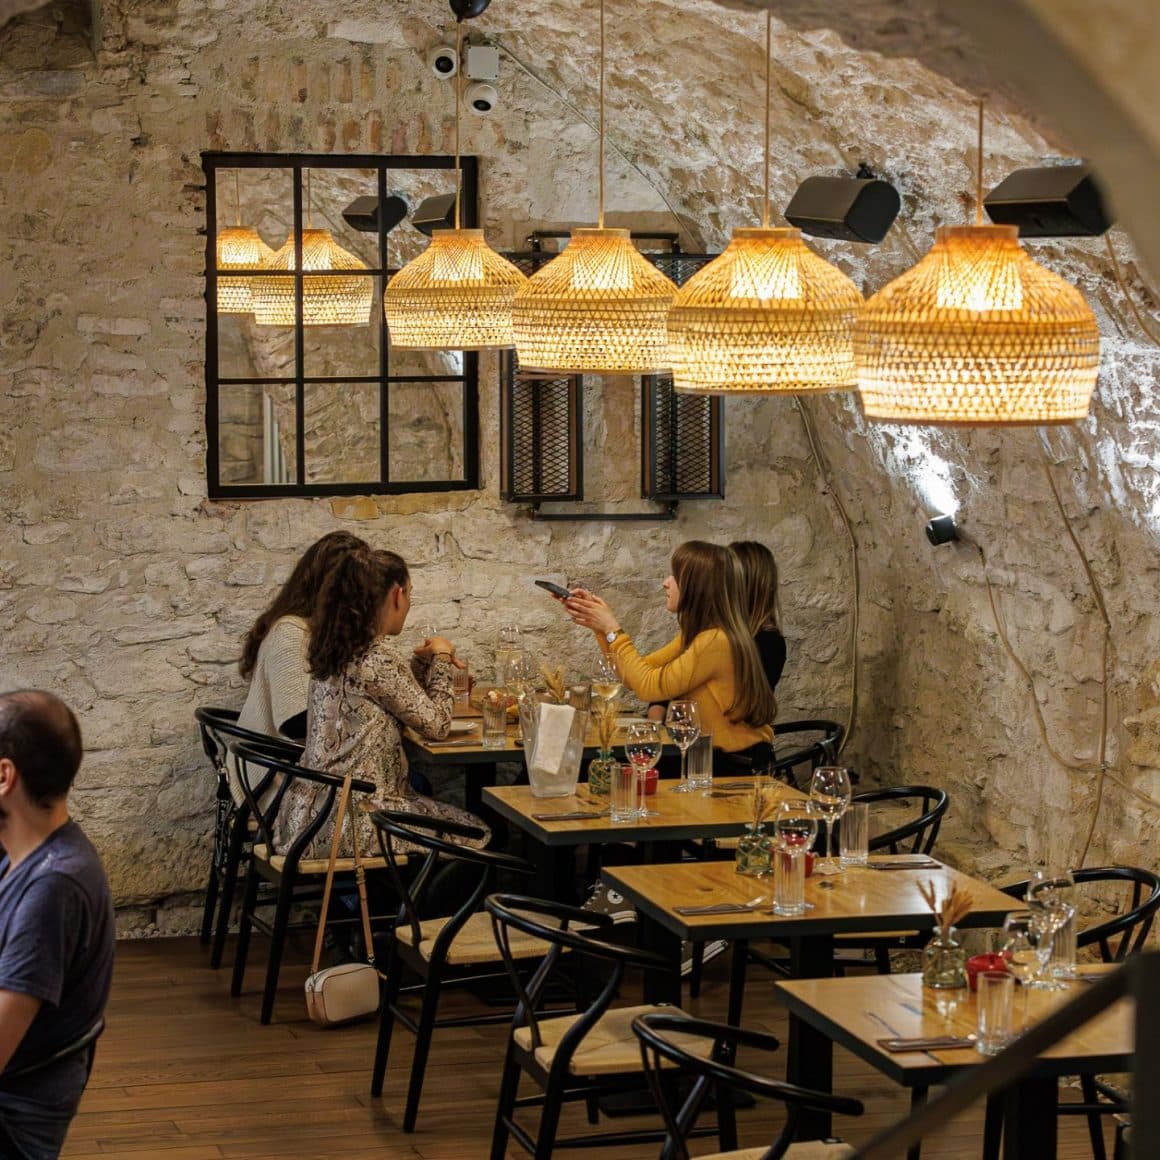 grup de 4 fete ia masa la restaurant Nativ din Cluj, amenajat elegant, cu pereti neslefuiti si corpuri de iluminat moderne